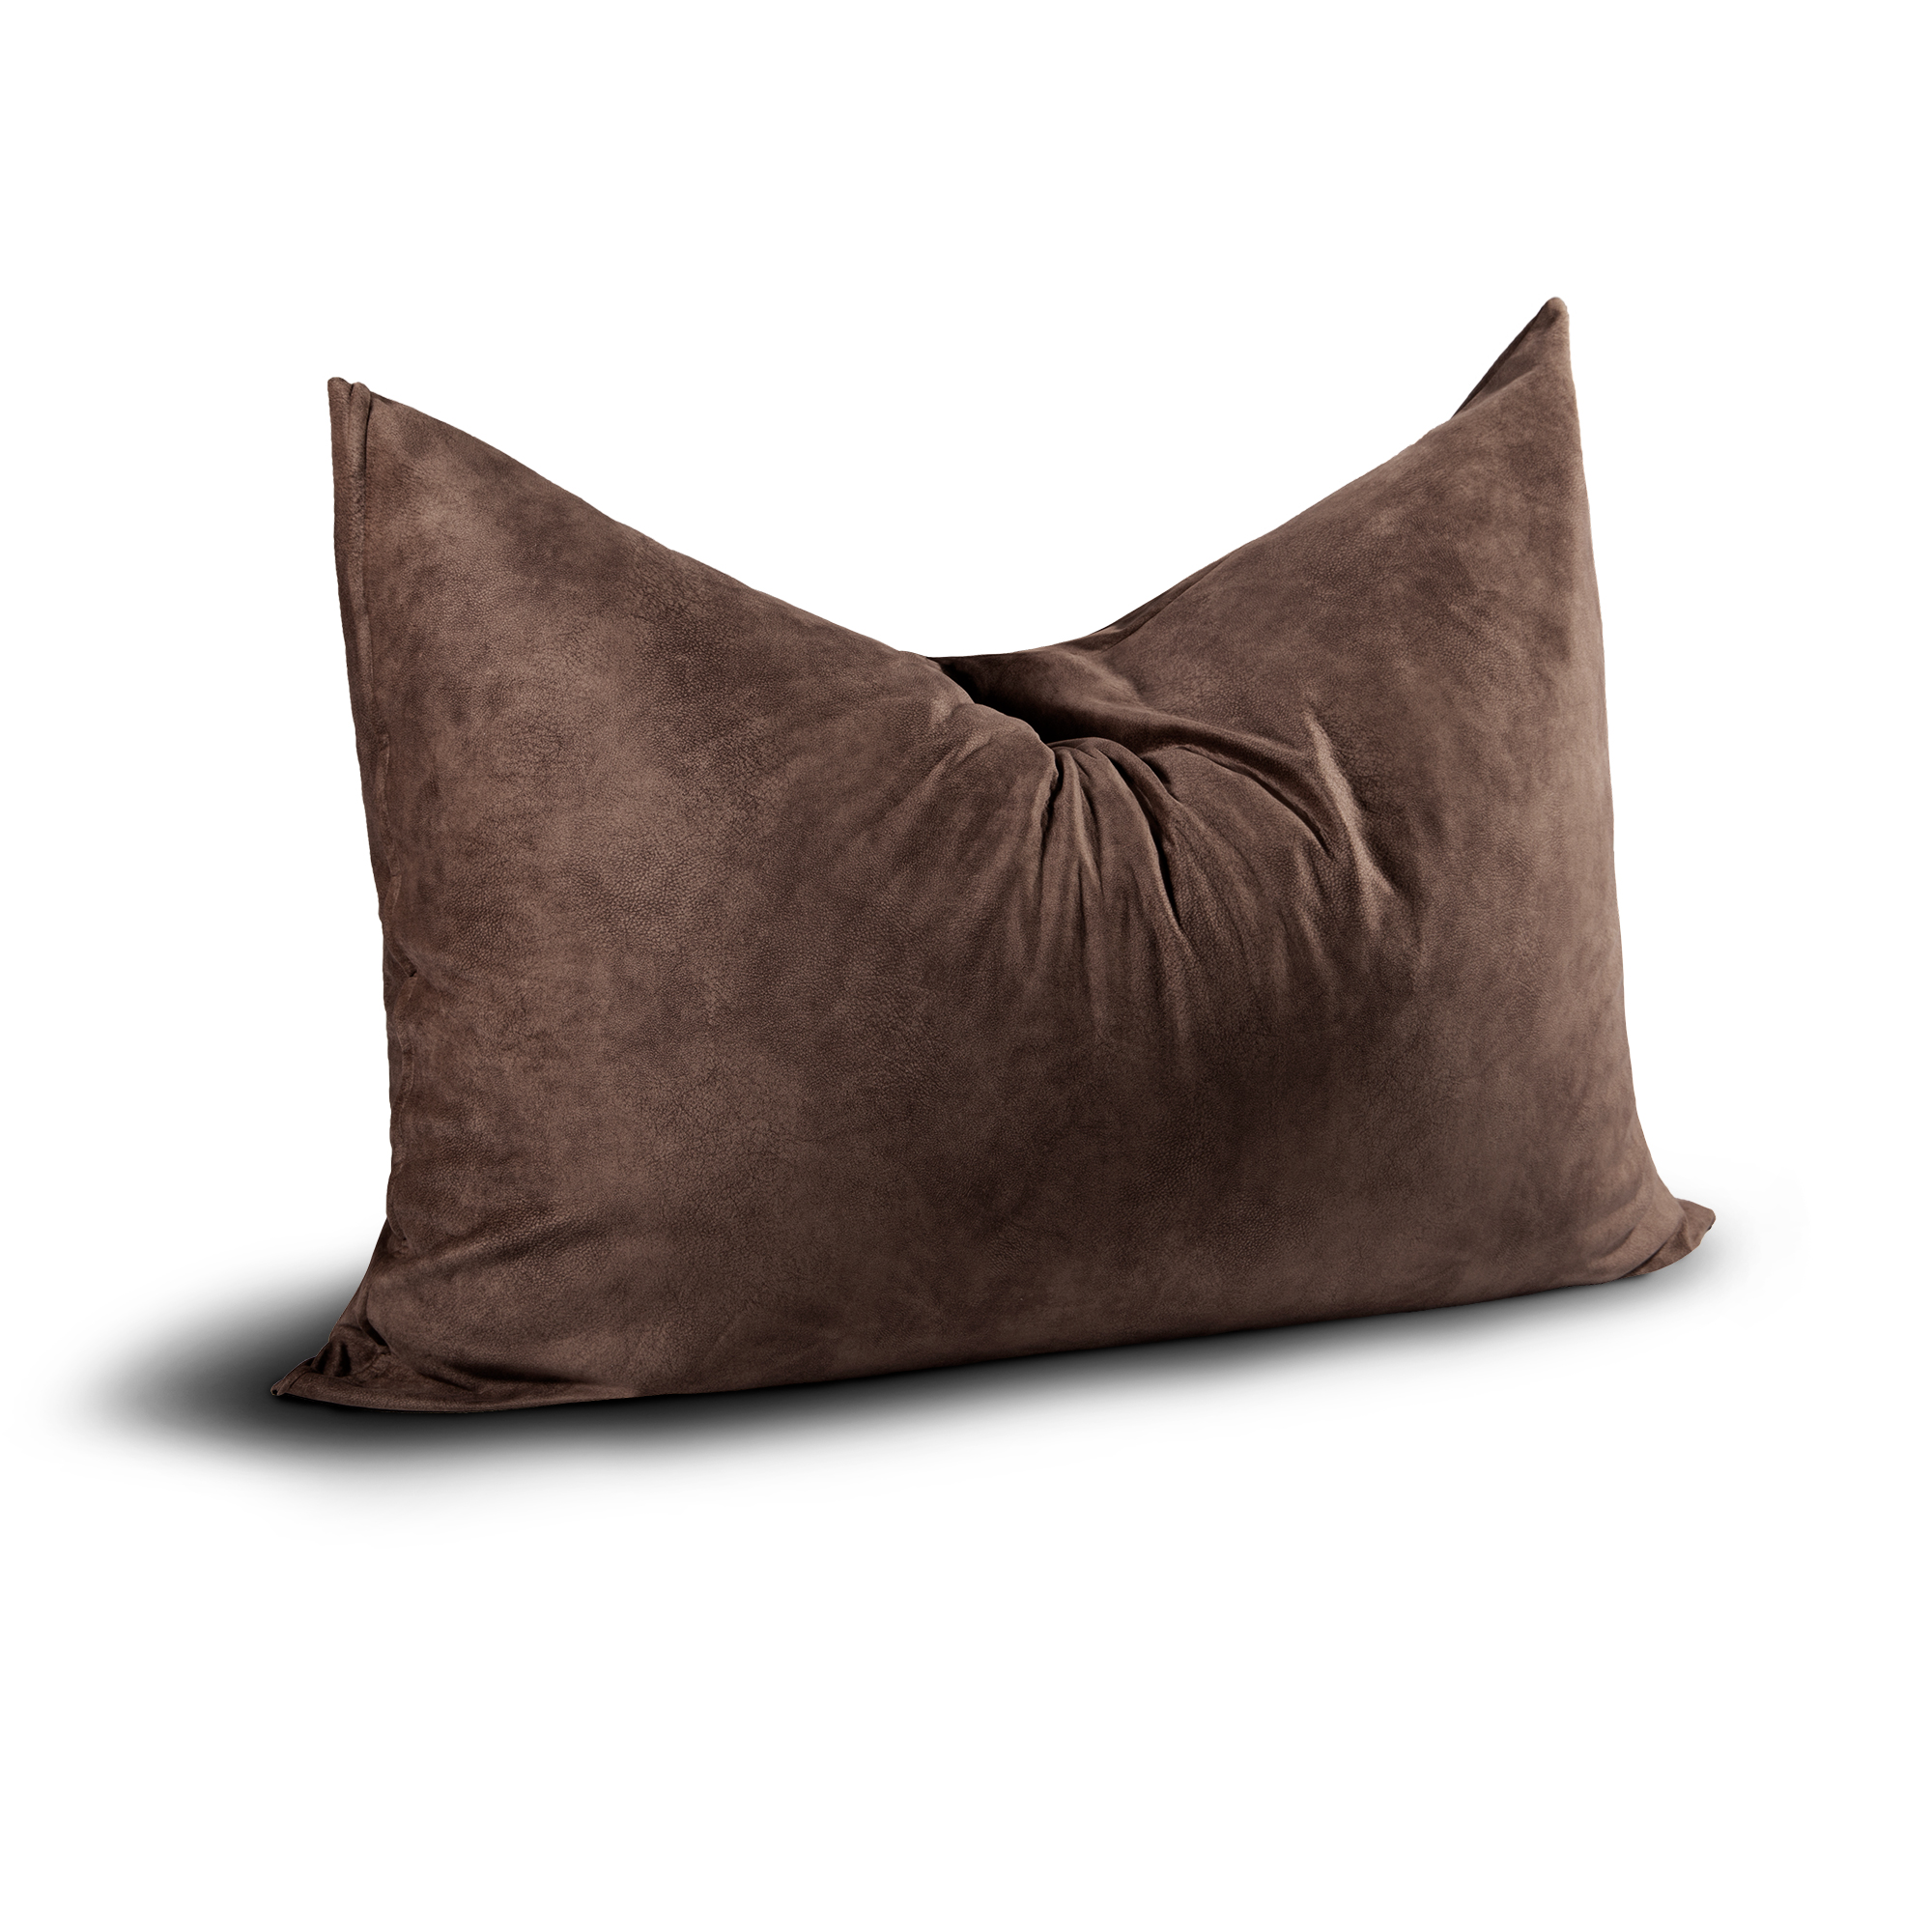 Jaxx 5.5 ft Pillow Saxx Bean Bag Pillow Charcoal